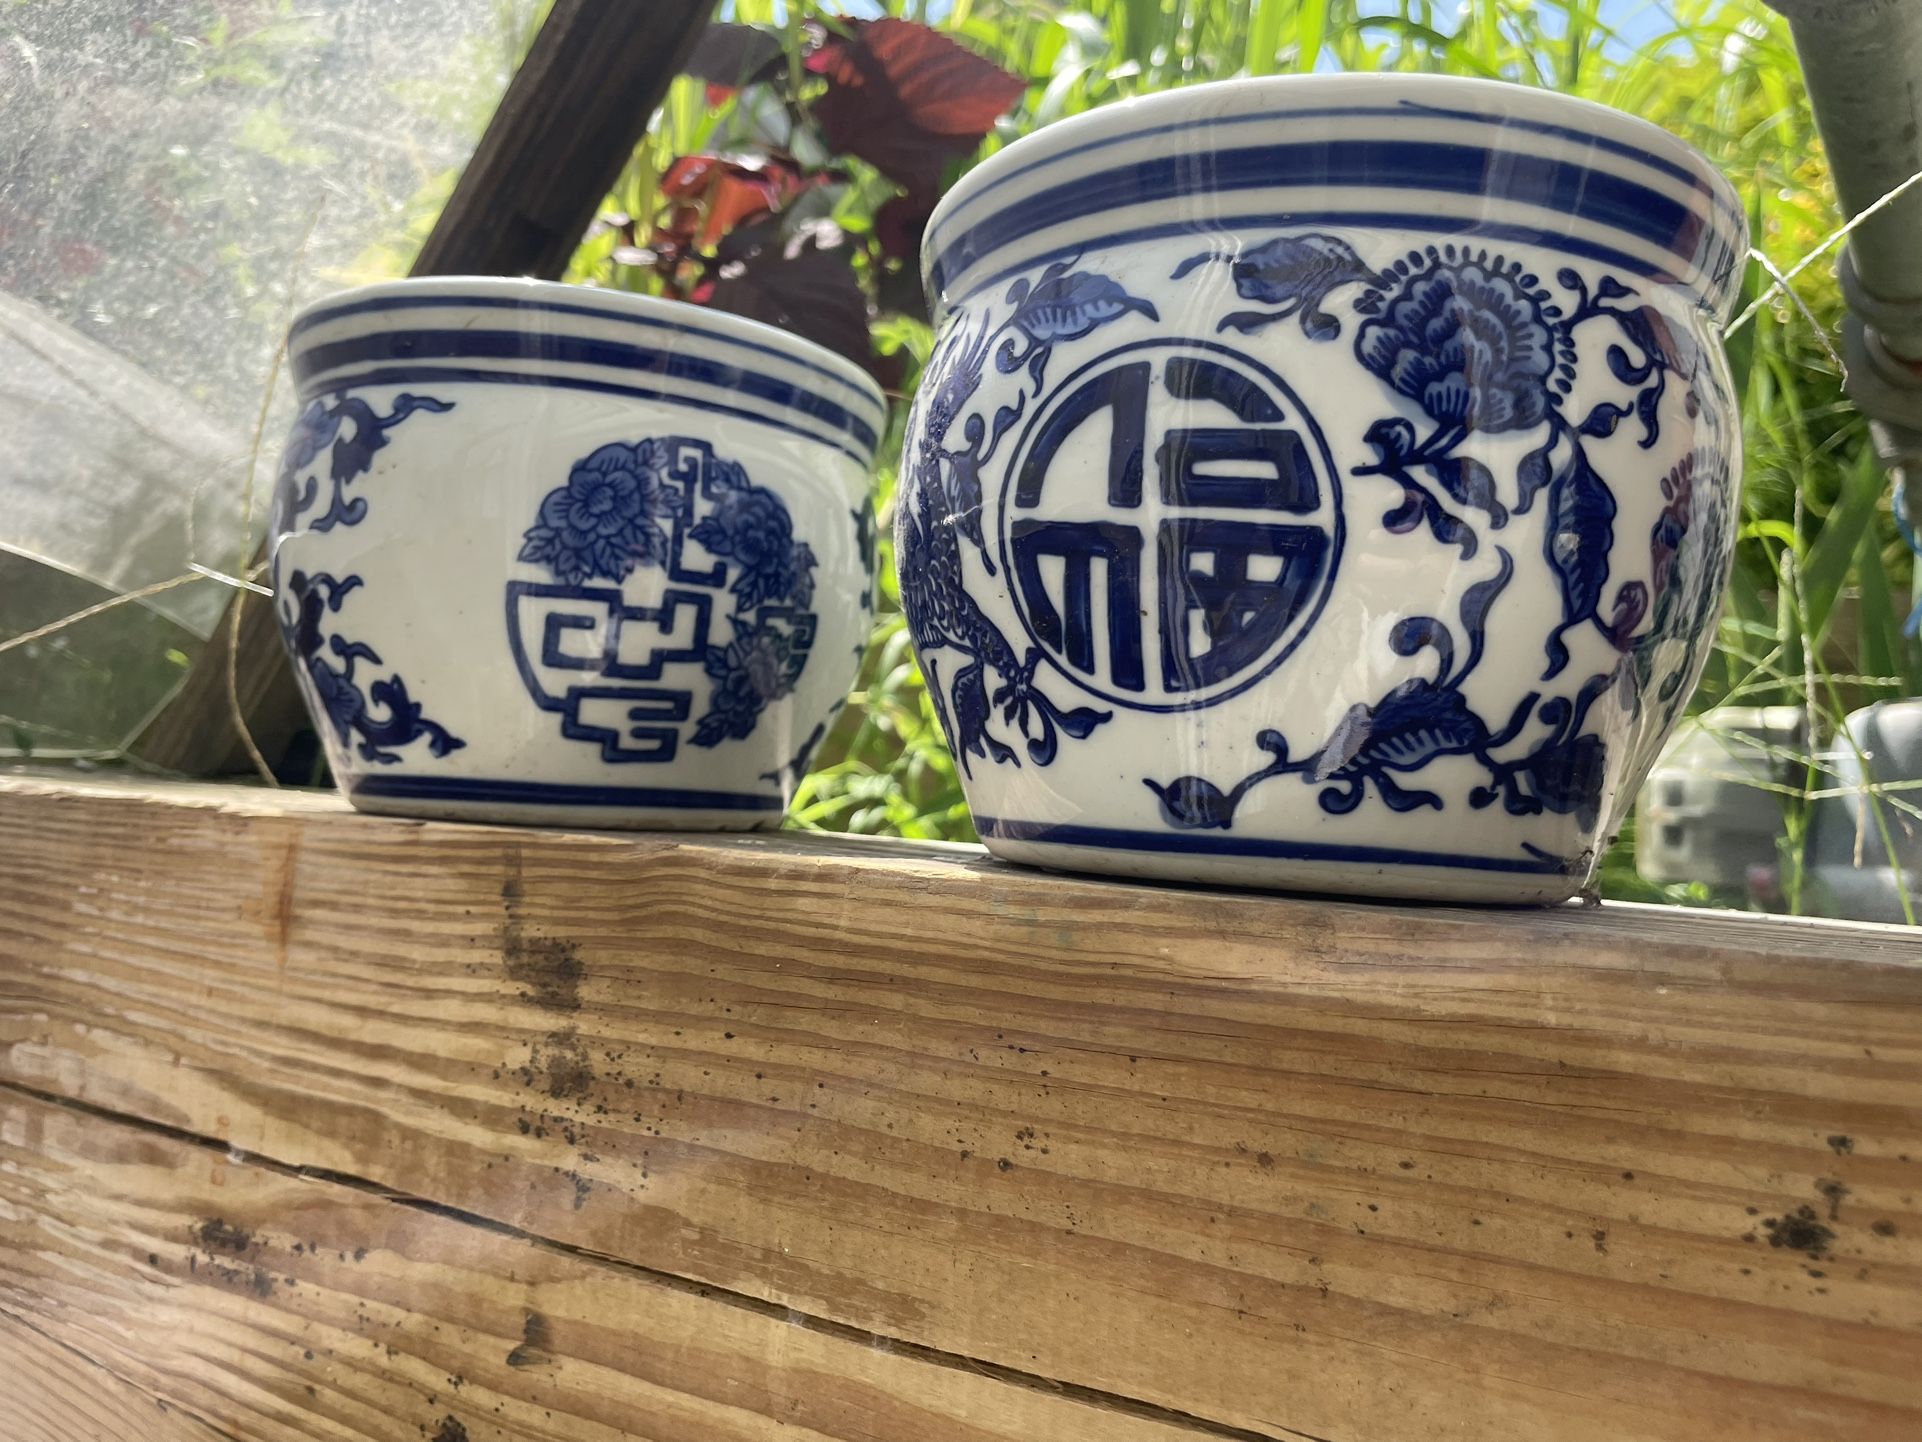 Decorative Pot / Blue And White Pots // Asian Decor Plant Pots 